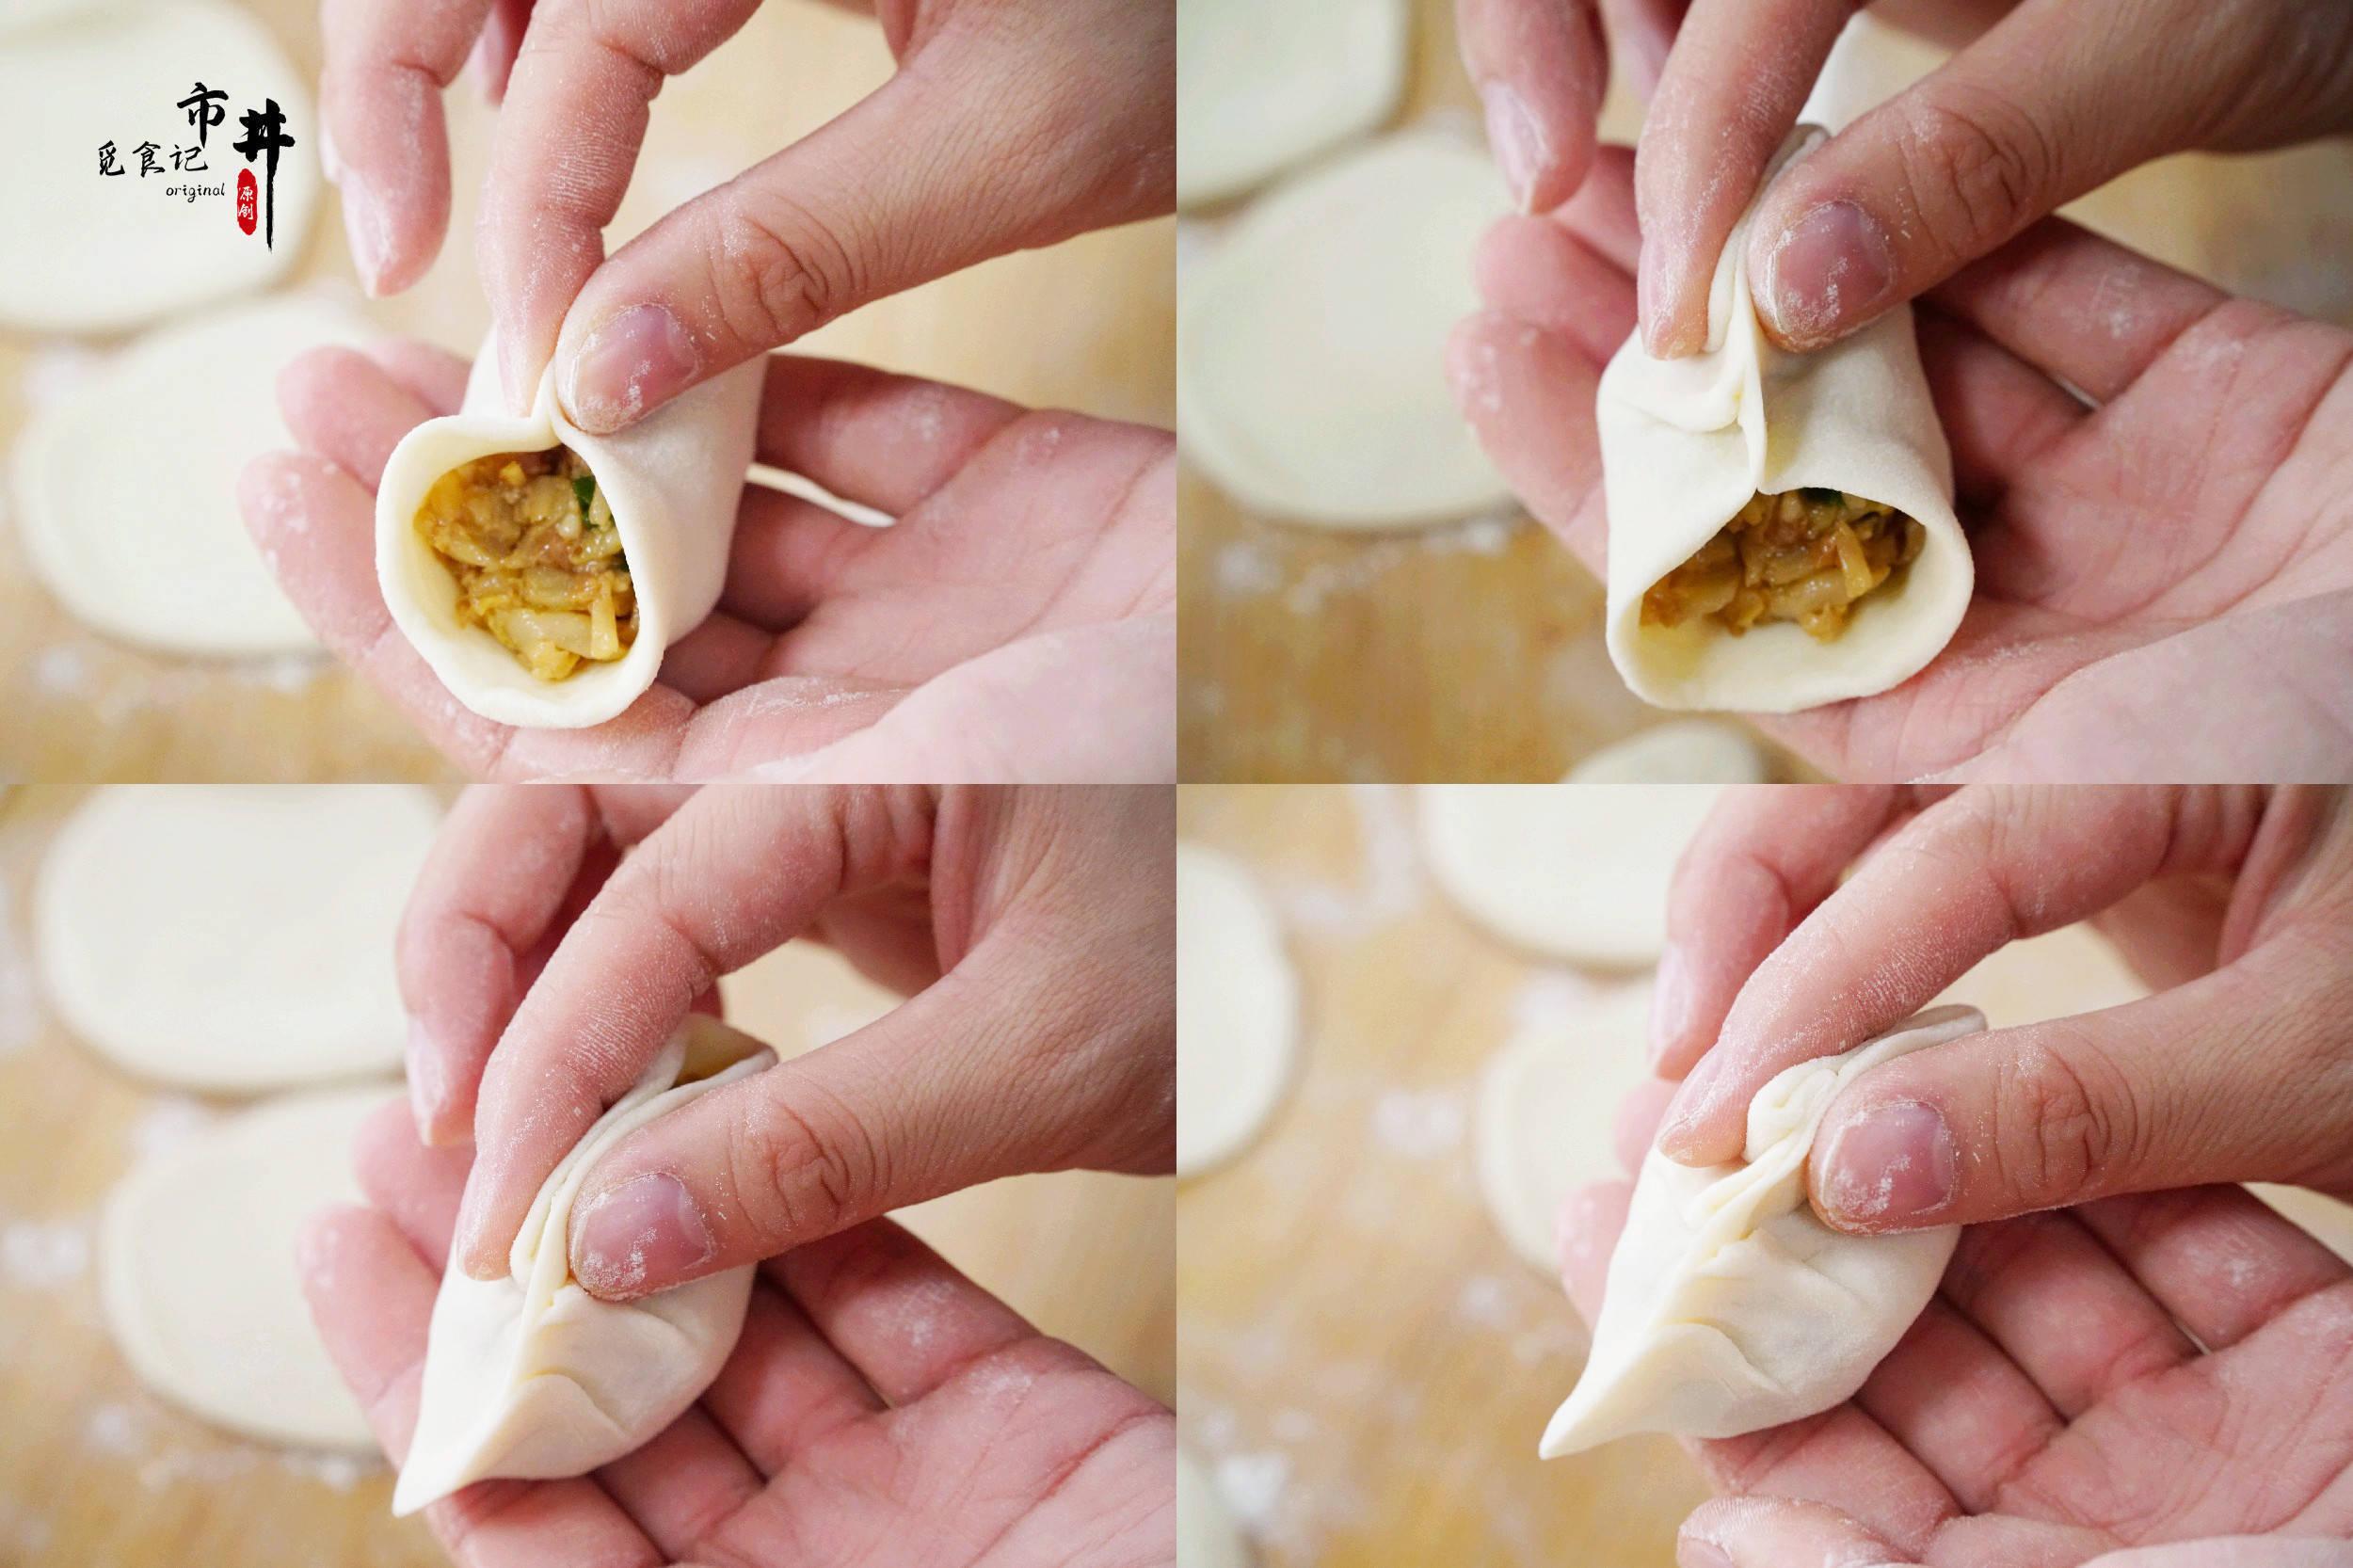 包饺子的手法有点像麦穗饺子,但月牙饺子的花样在一边,包法很简单基本